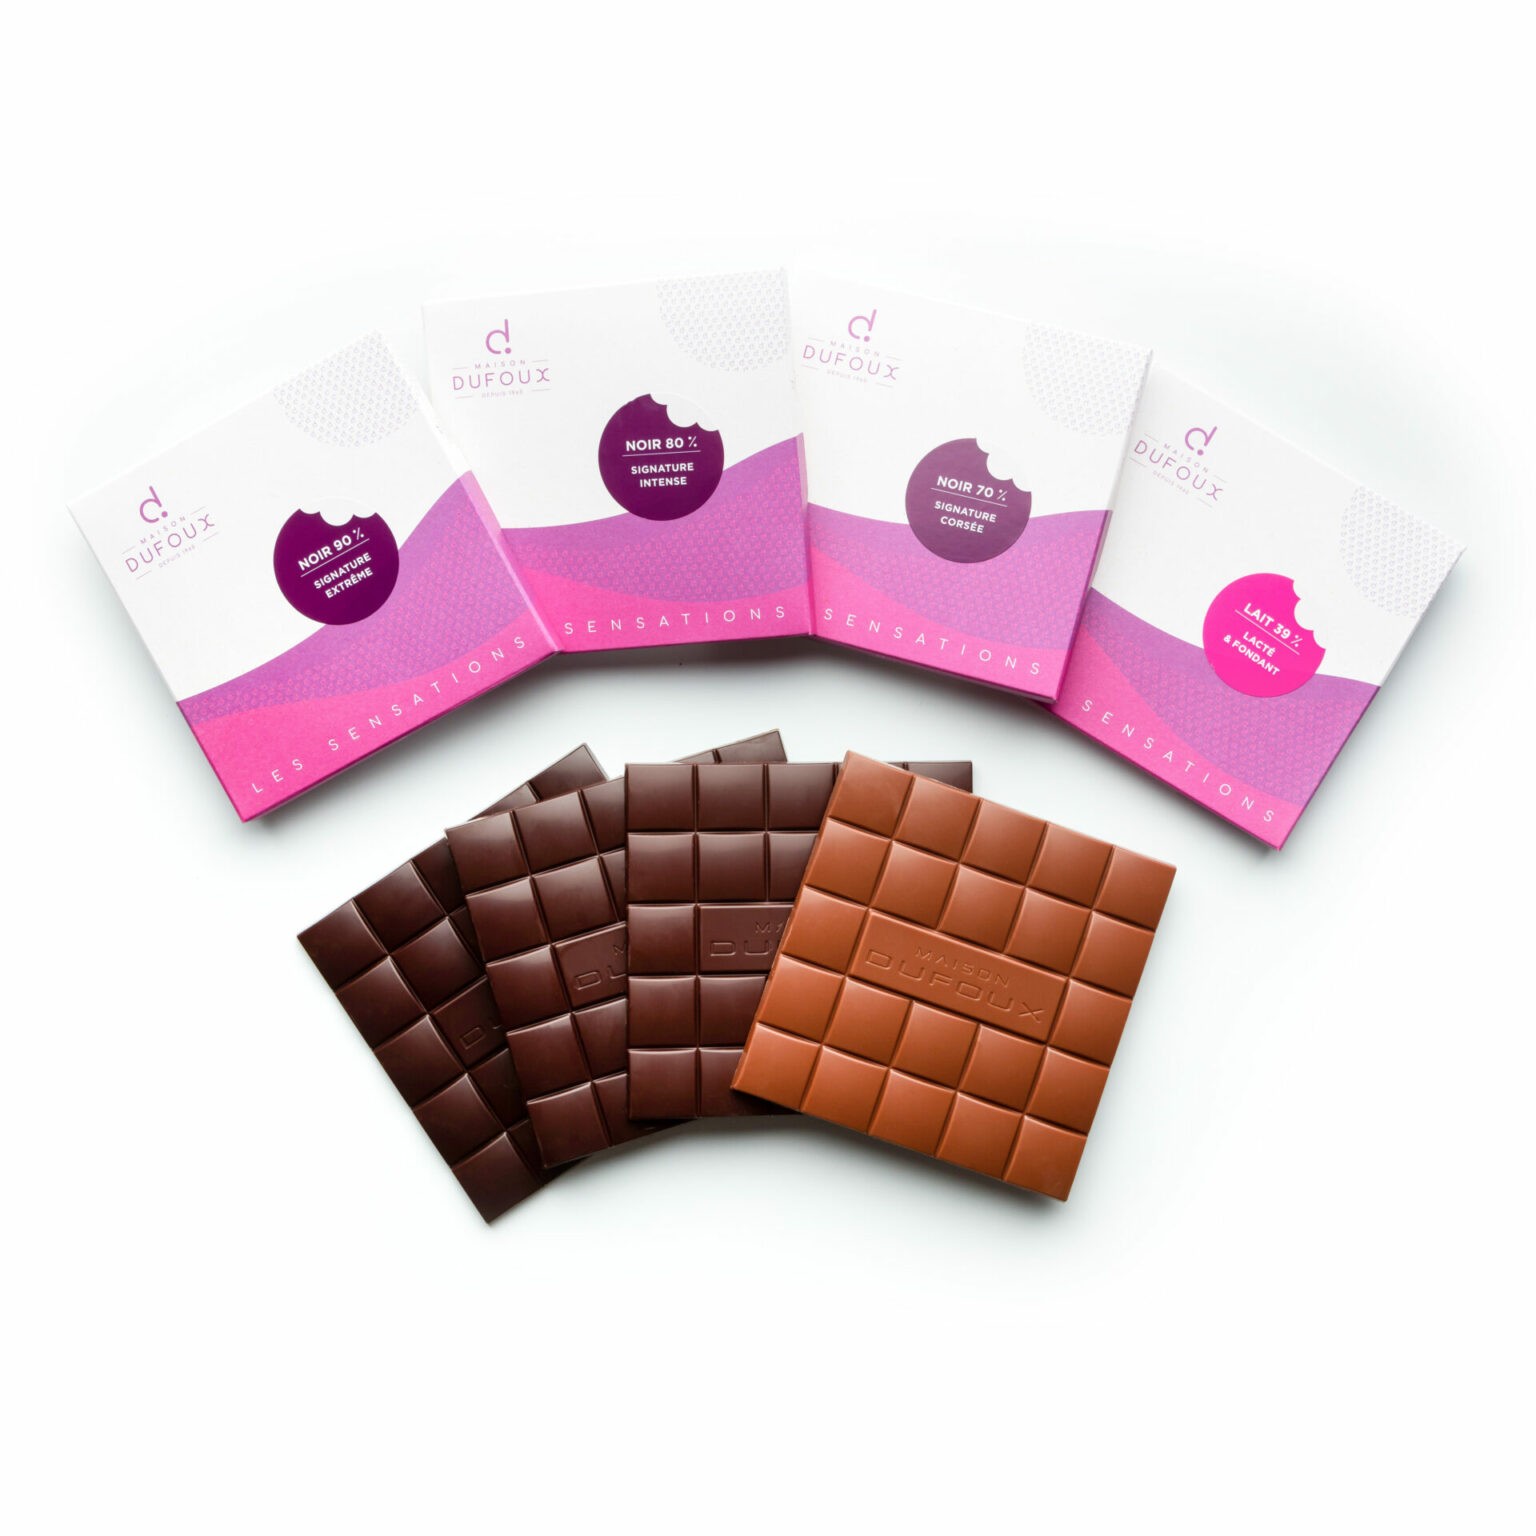 Coffret tablettes de chocolat Grand crus Maison Dufoux Artisan Chocolatier en Bourgogne et à